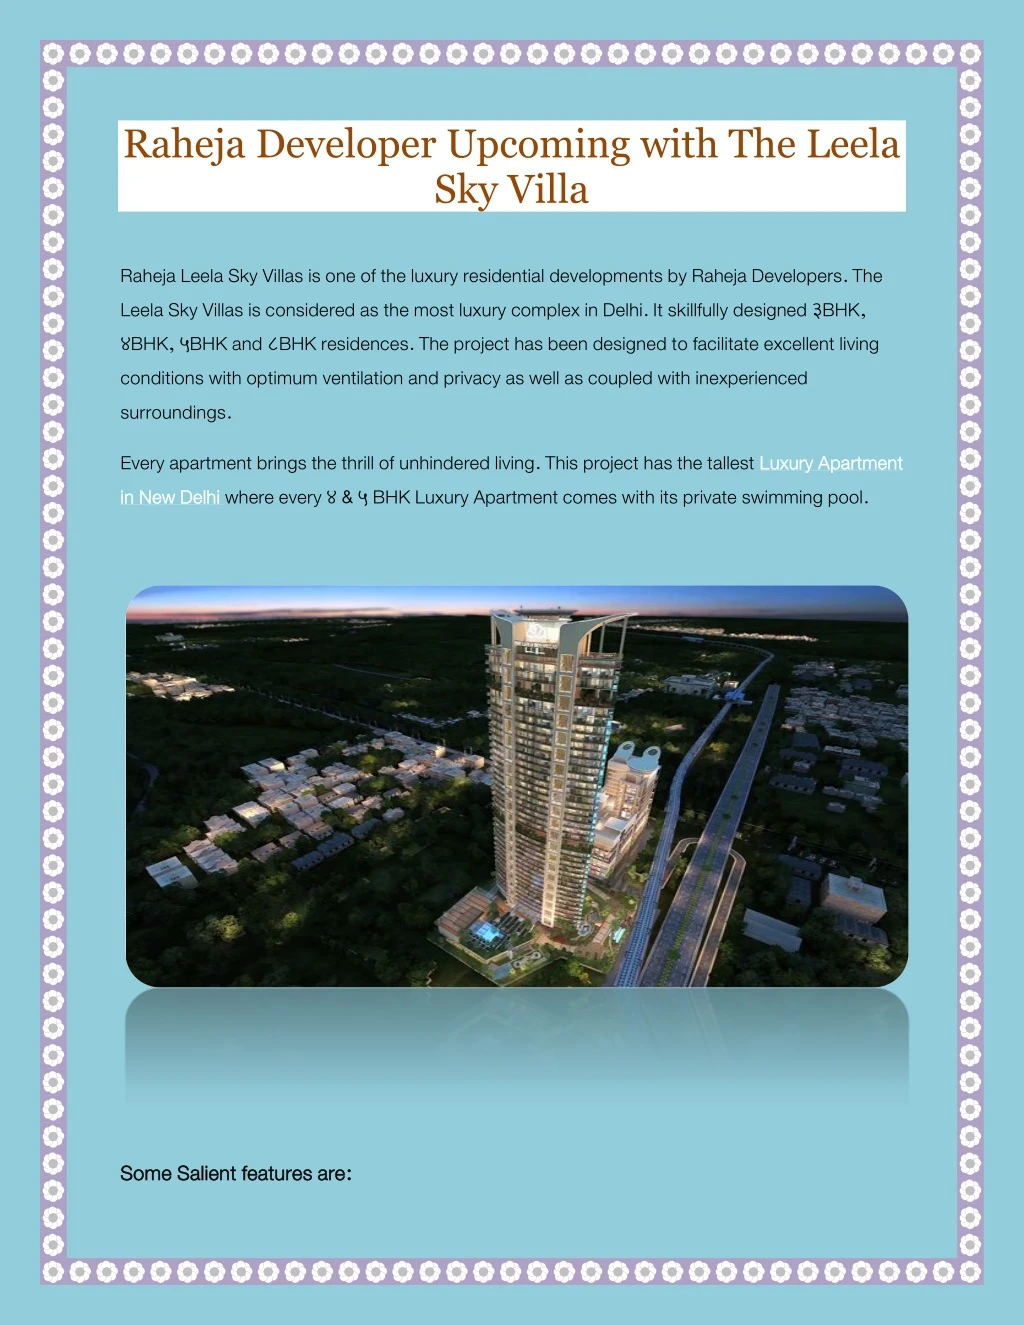 raheja developer upcoming with the leela sky villa